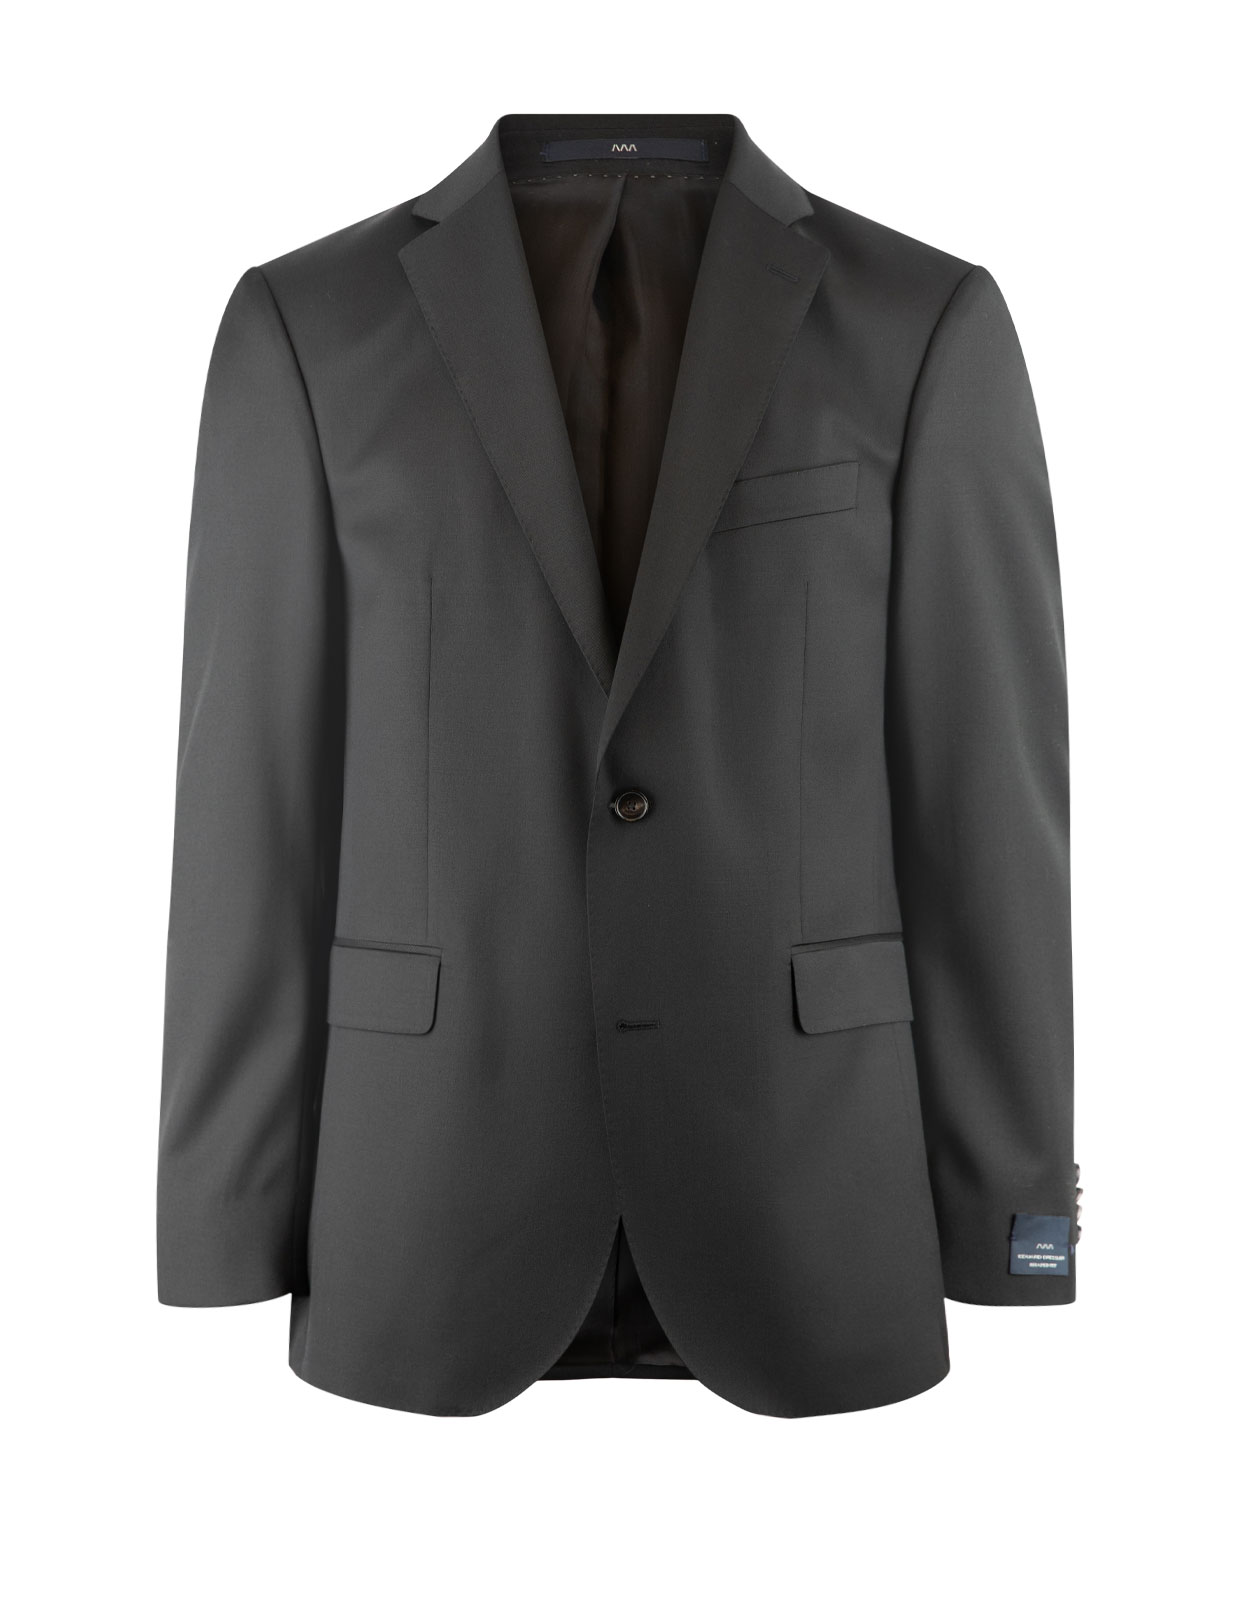 Edson Suit Jacket 110's Wool Mix & Match Black Stl 96